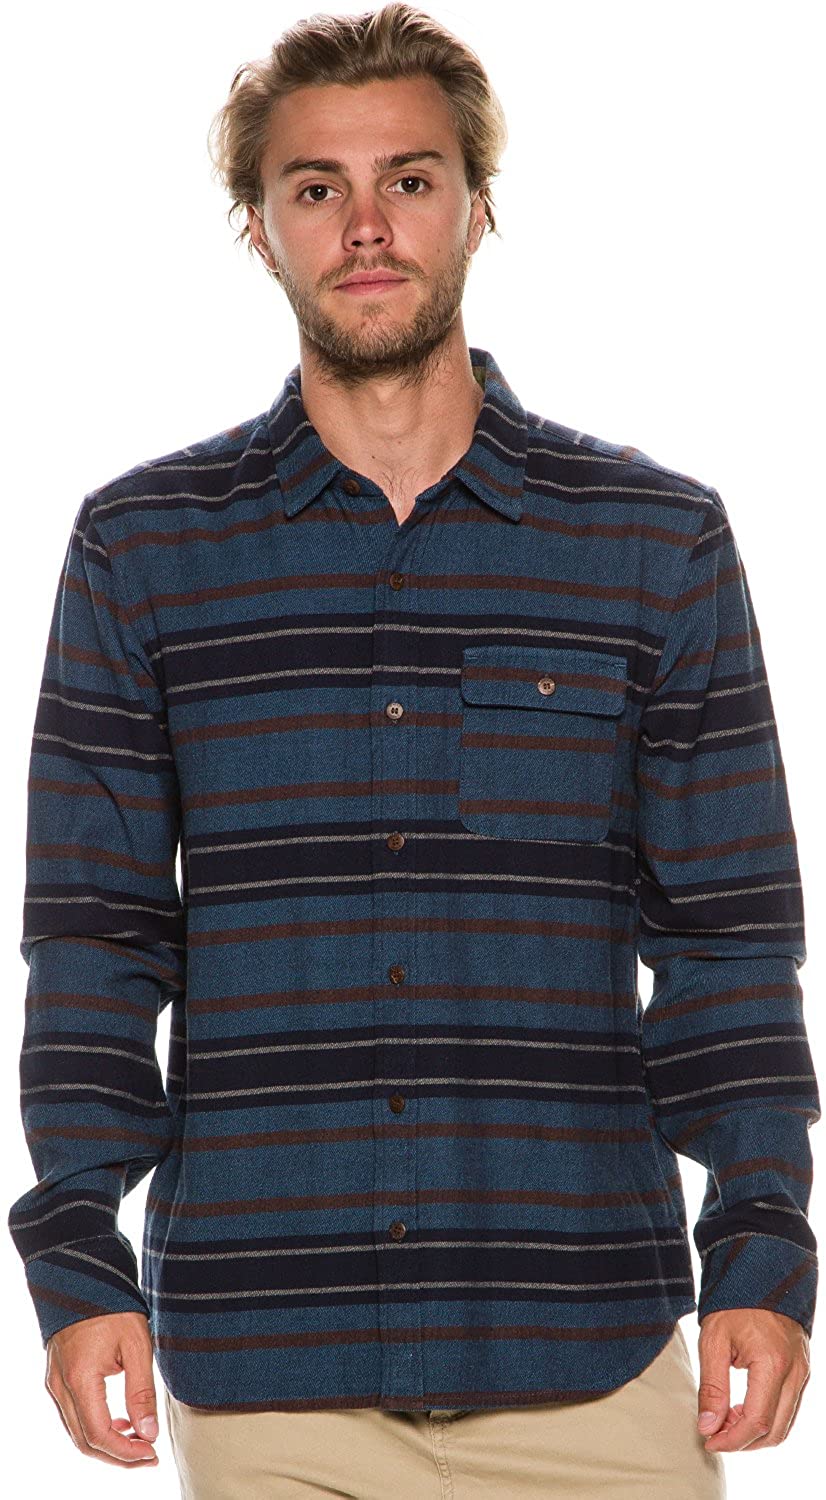 O'Neill Men's Badlands Long Sleeve Flannel Shirt